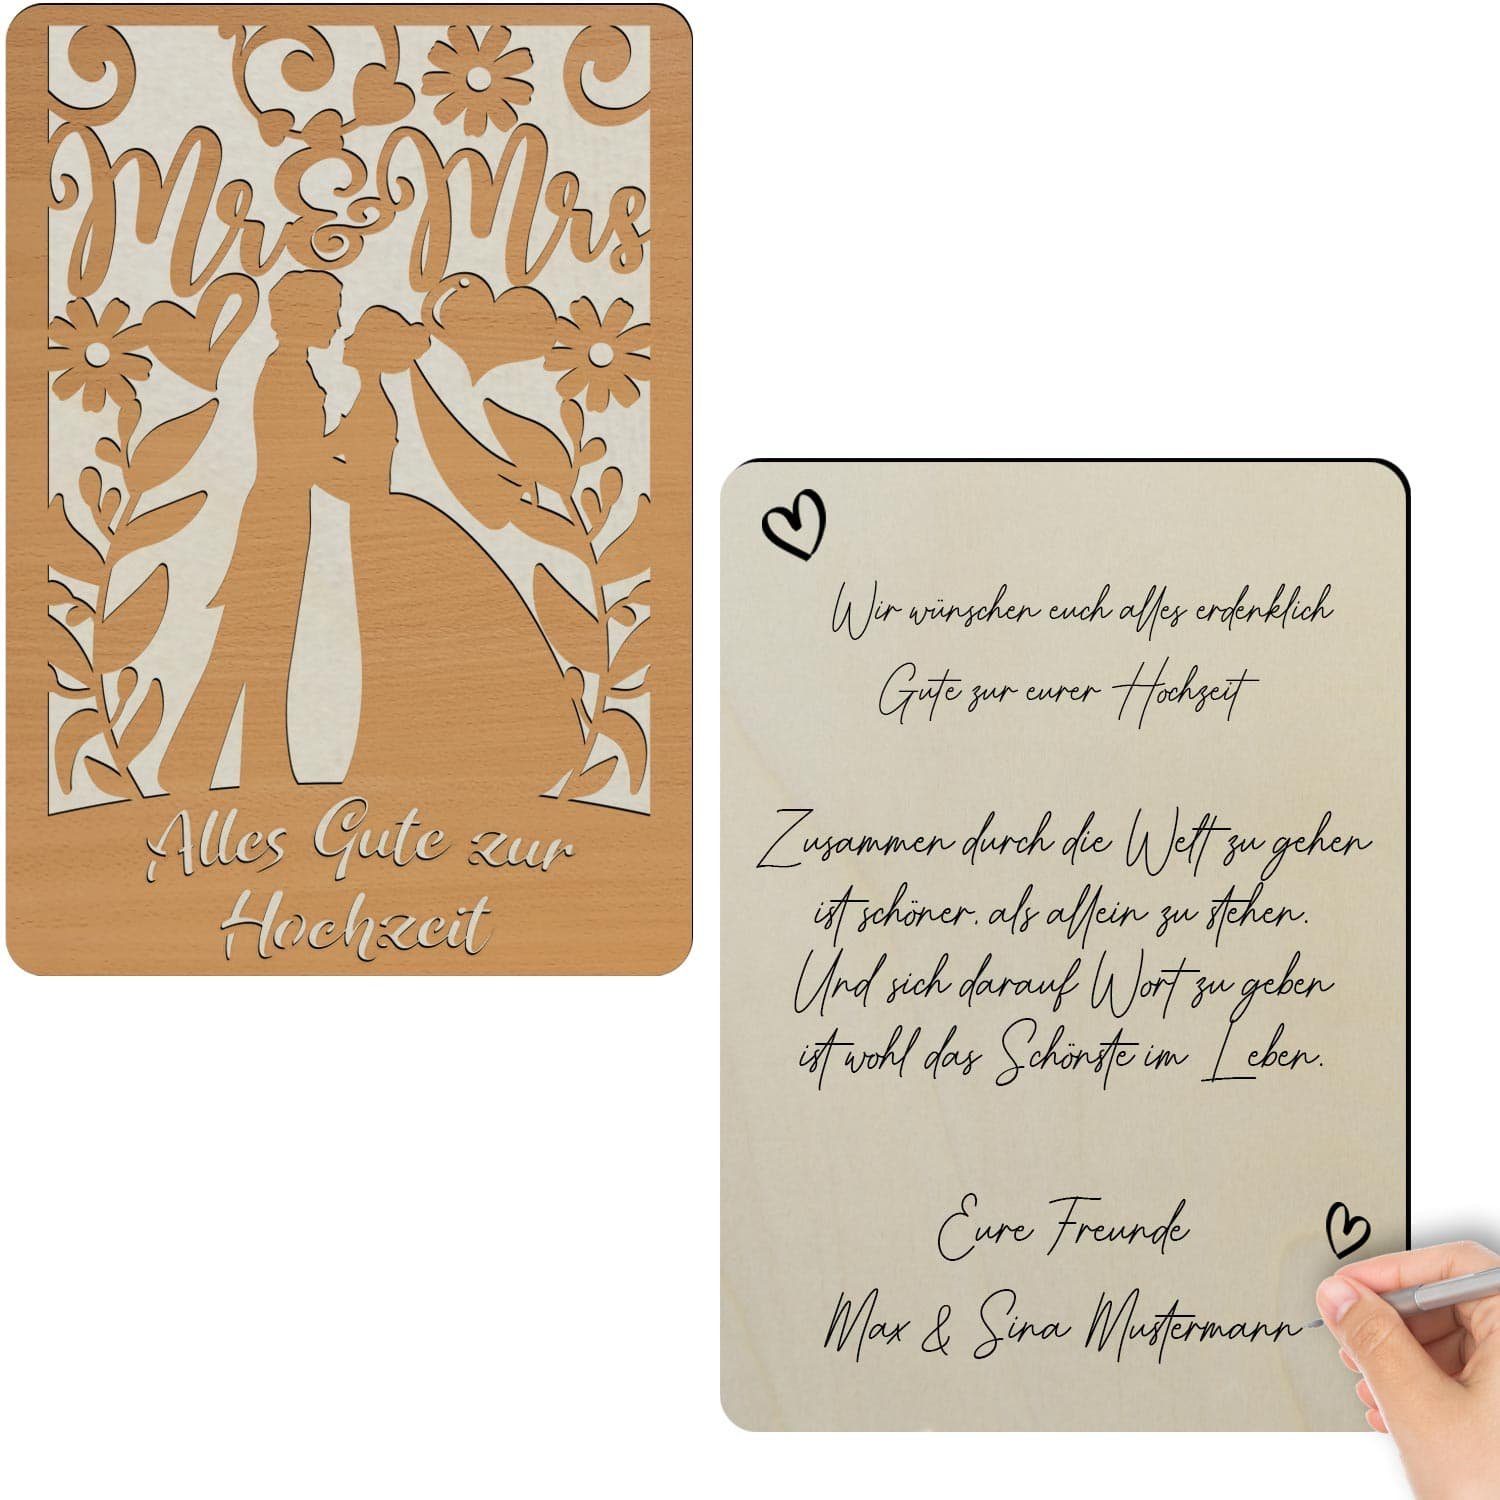 Holz Gute aus Glückwunschkarte Namofactur Alles Hochzeit, Holz, zur Glückwunschkarte zur Hochzeit aus